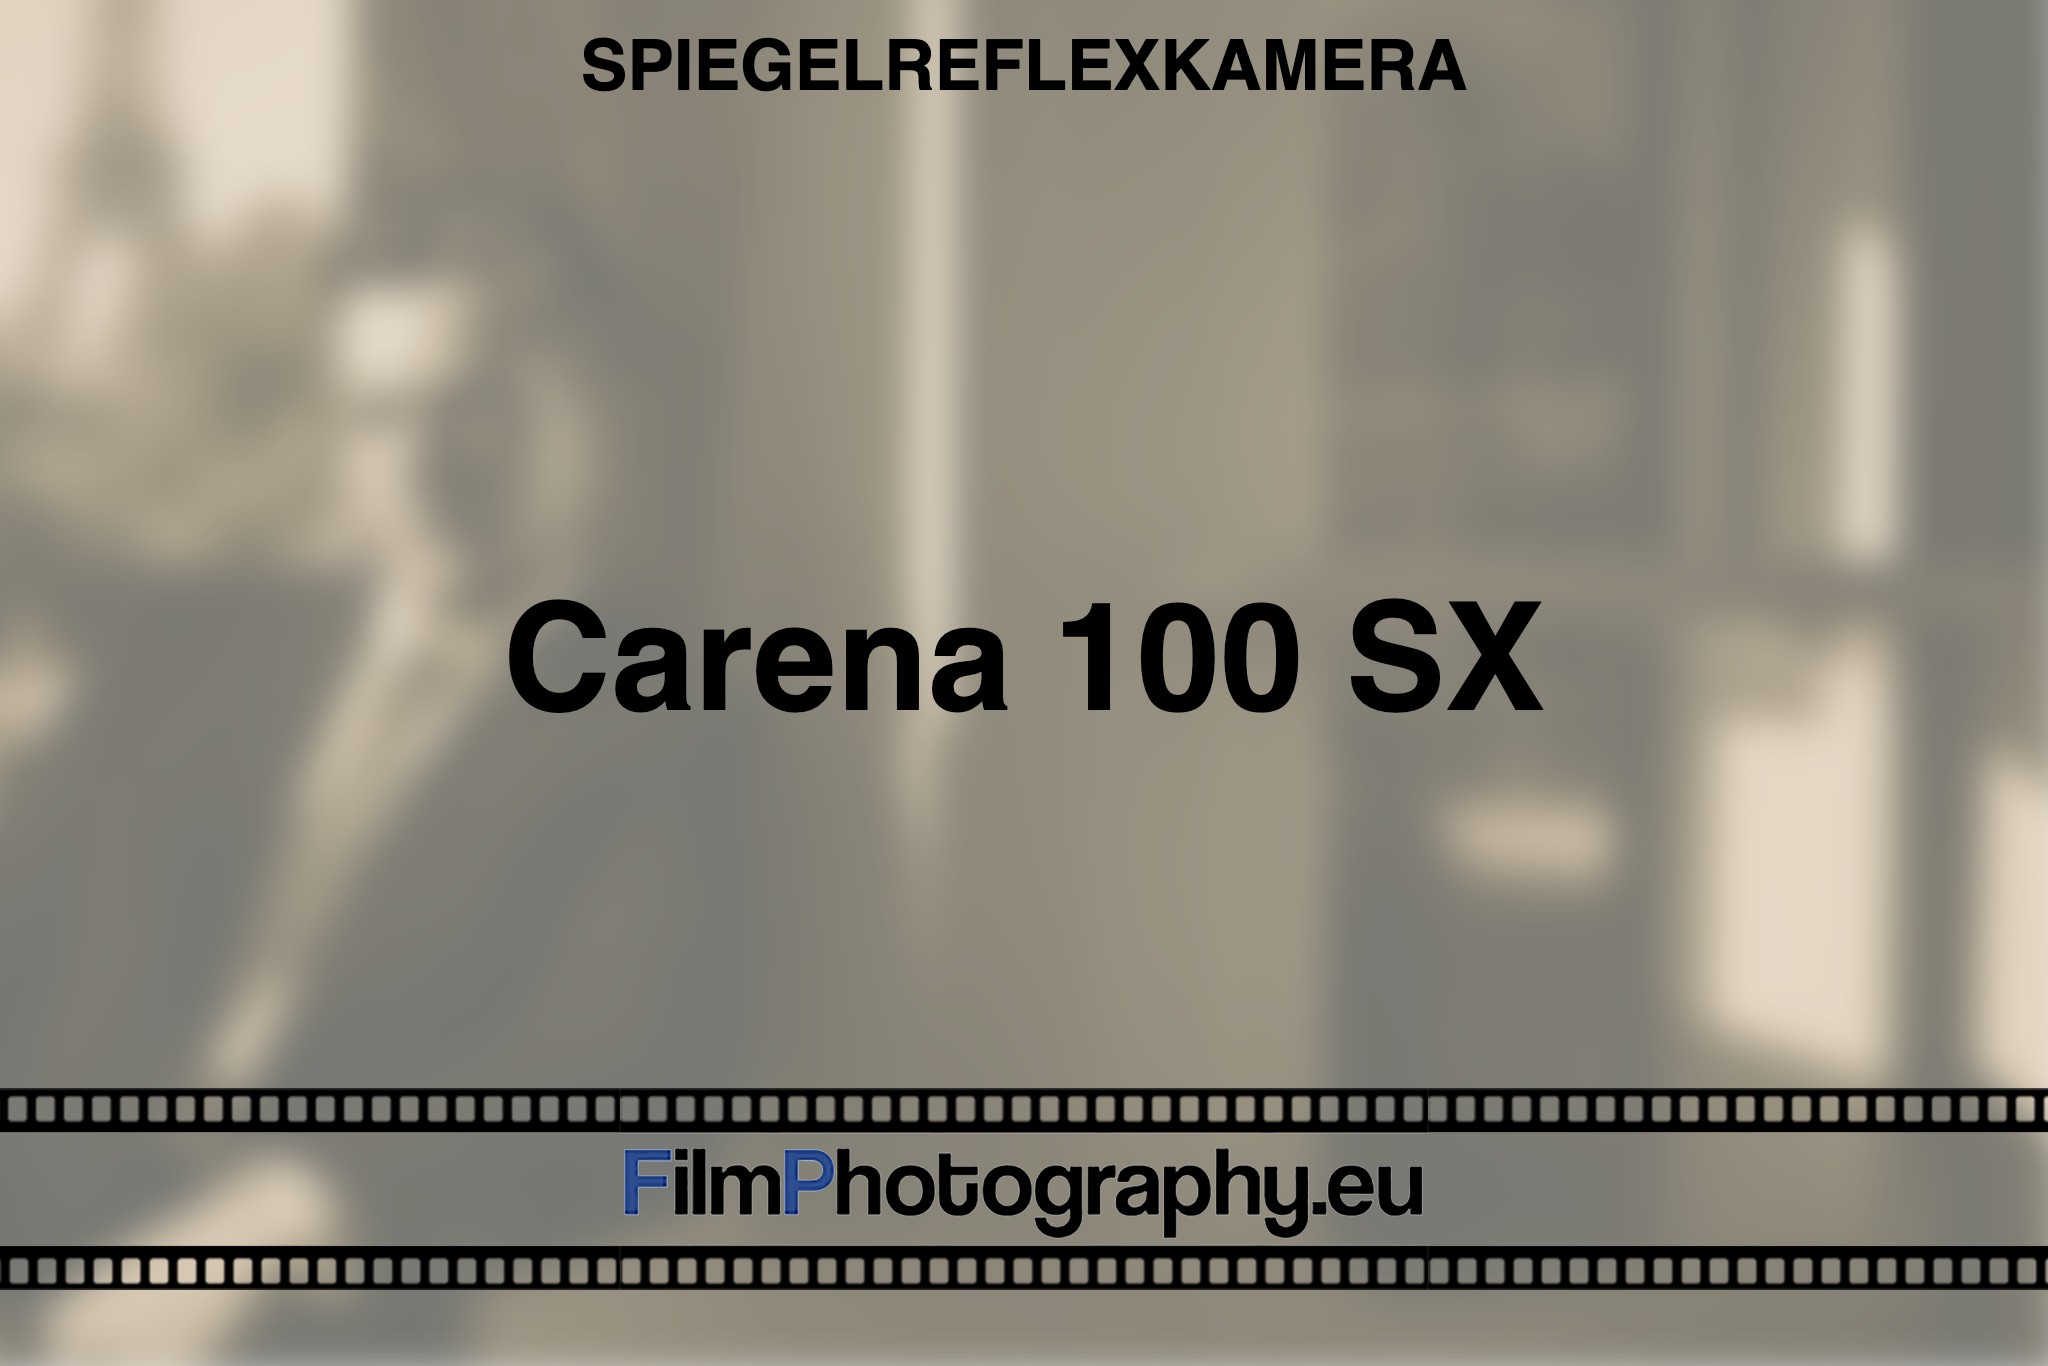 carena-100-sx-spiegelreflexkamera-bnv